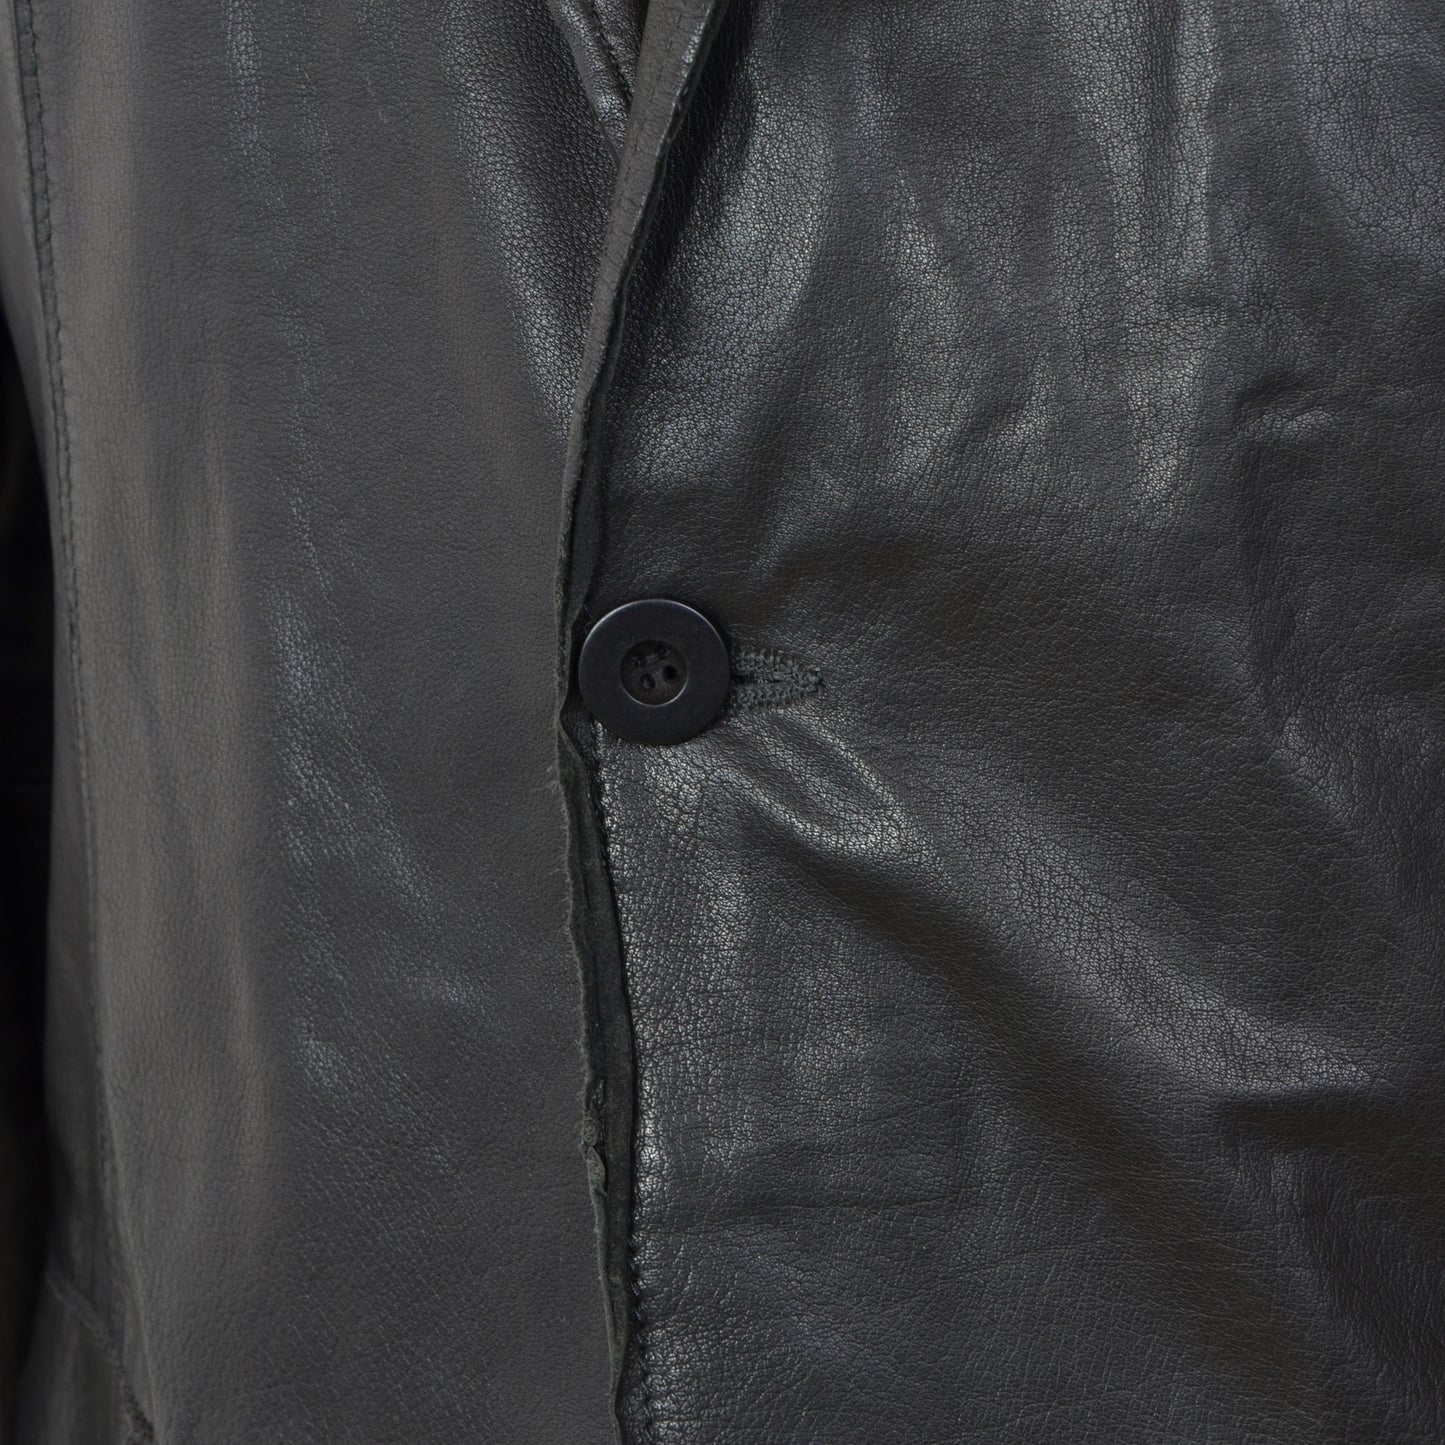 Gimo's Leather Jacket Size 56 - Black